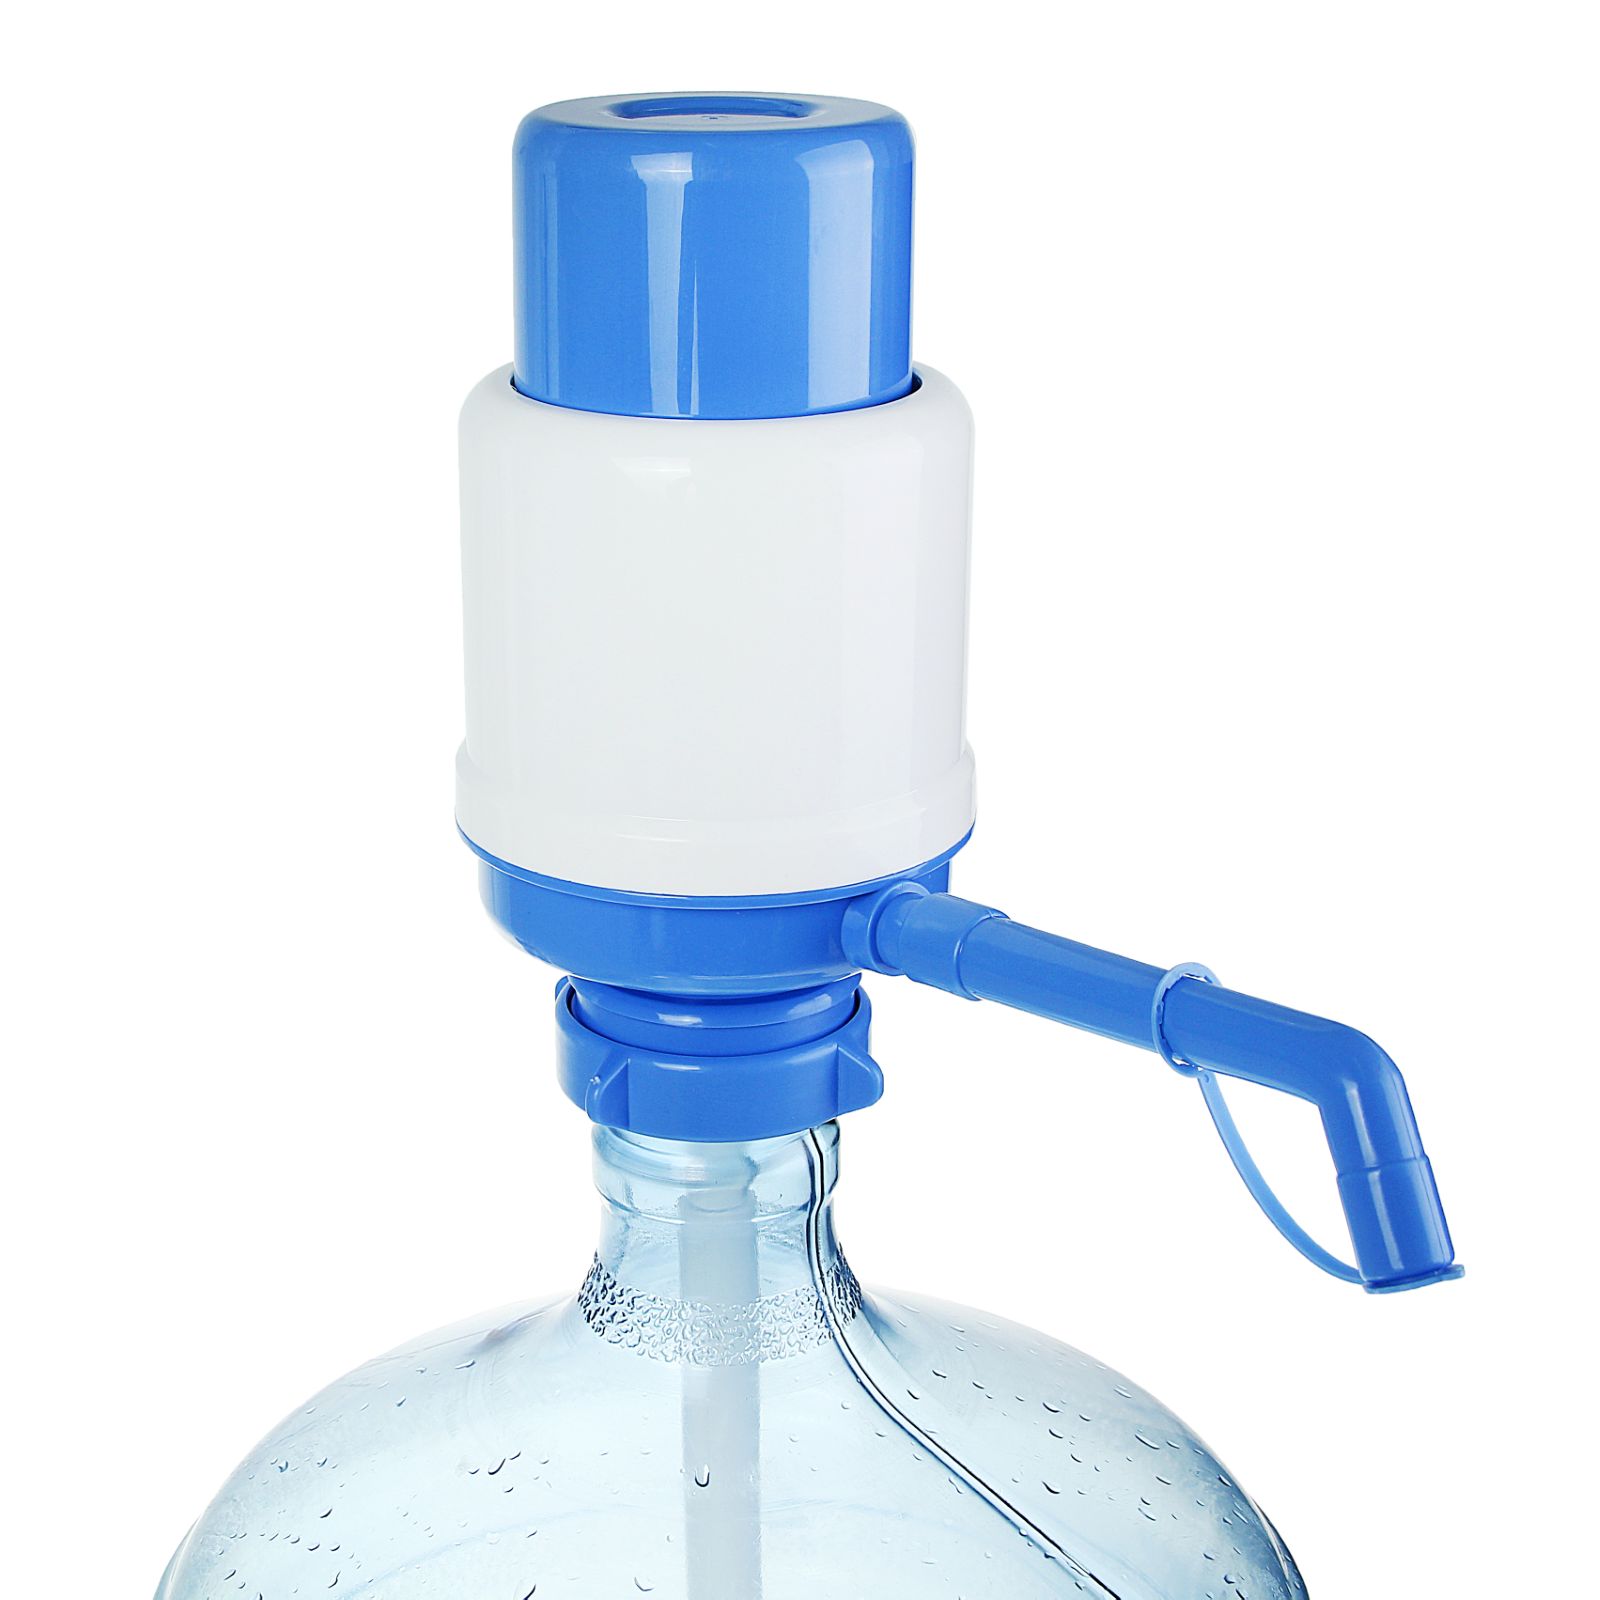 Помпа Sima-Land для воды LESOTO Ideal механическая под бутыль от 11 до 19 л голубая - фото 4